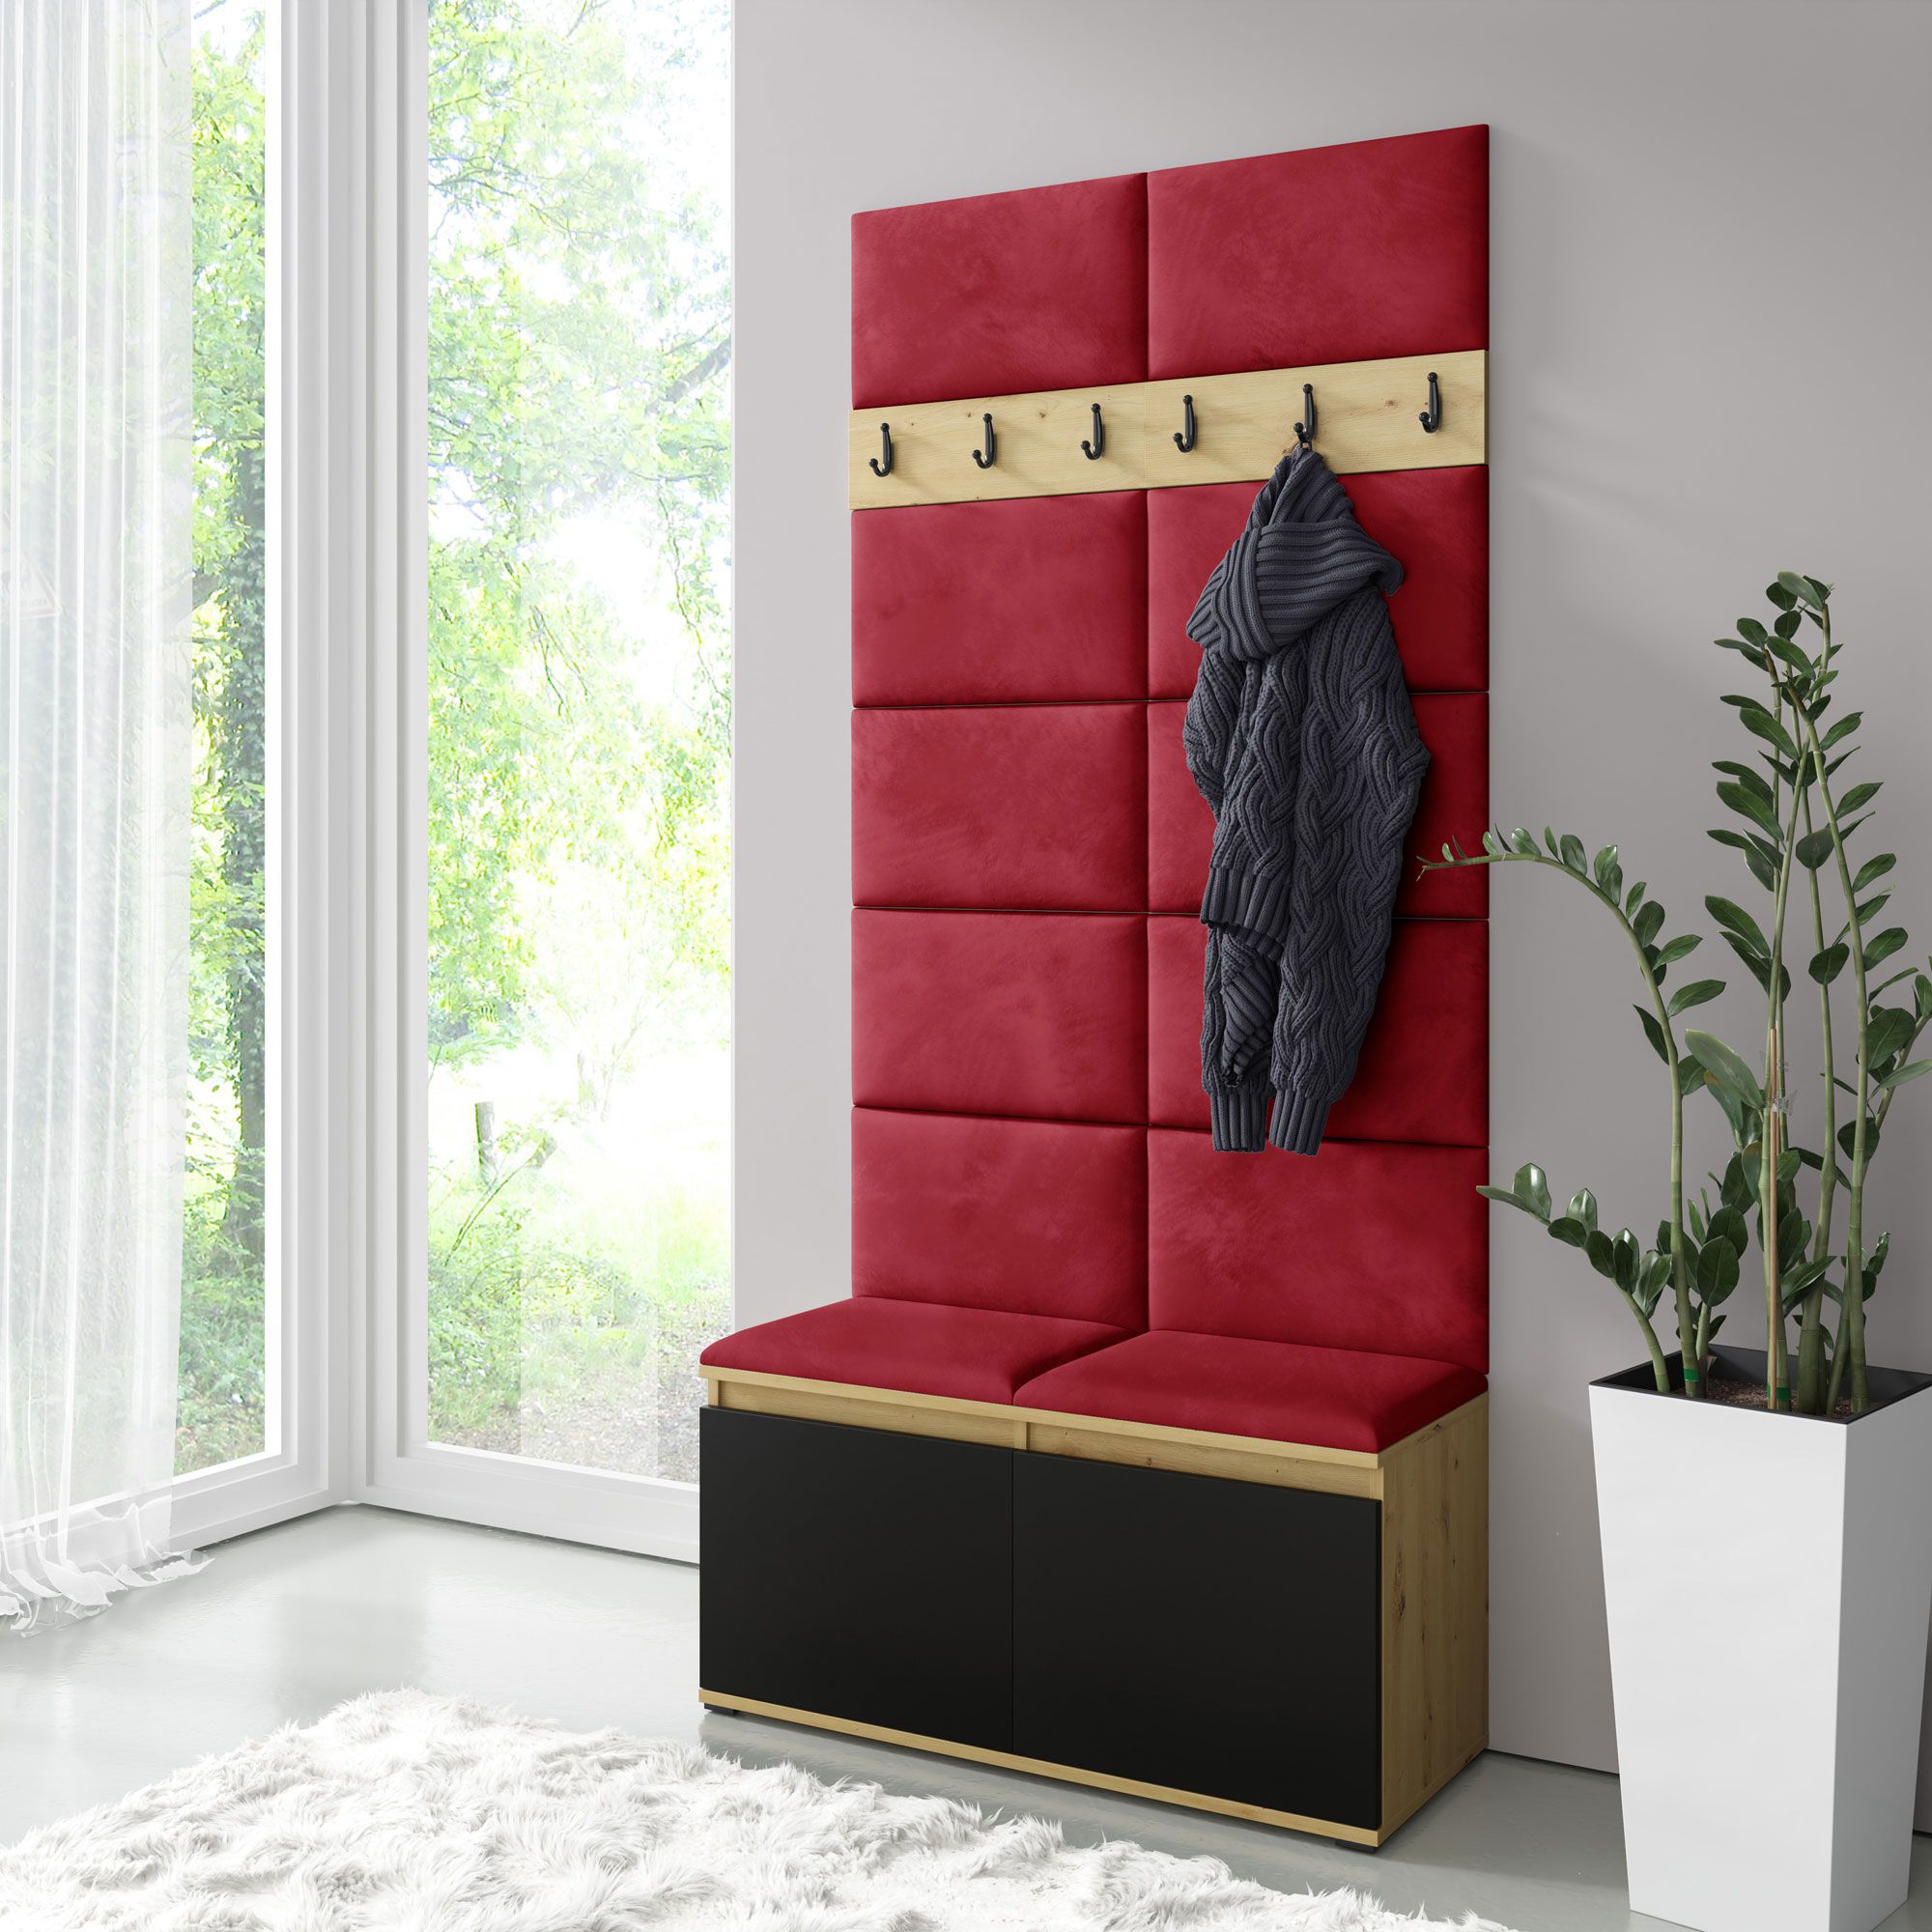 1 Meter breite Garderobe 01 mit Sitzbank gepolstert, für 8 Paar Schuhe, Artisan/Schwarz/Ruby Red, 215 x 100 x 40 cm, 6 Kleiderhaken, 4 große Fächer